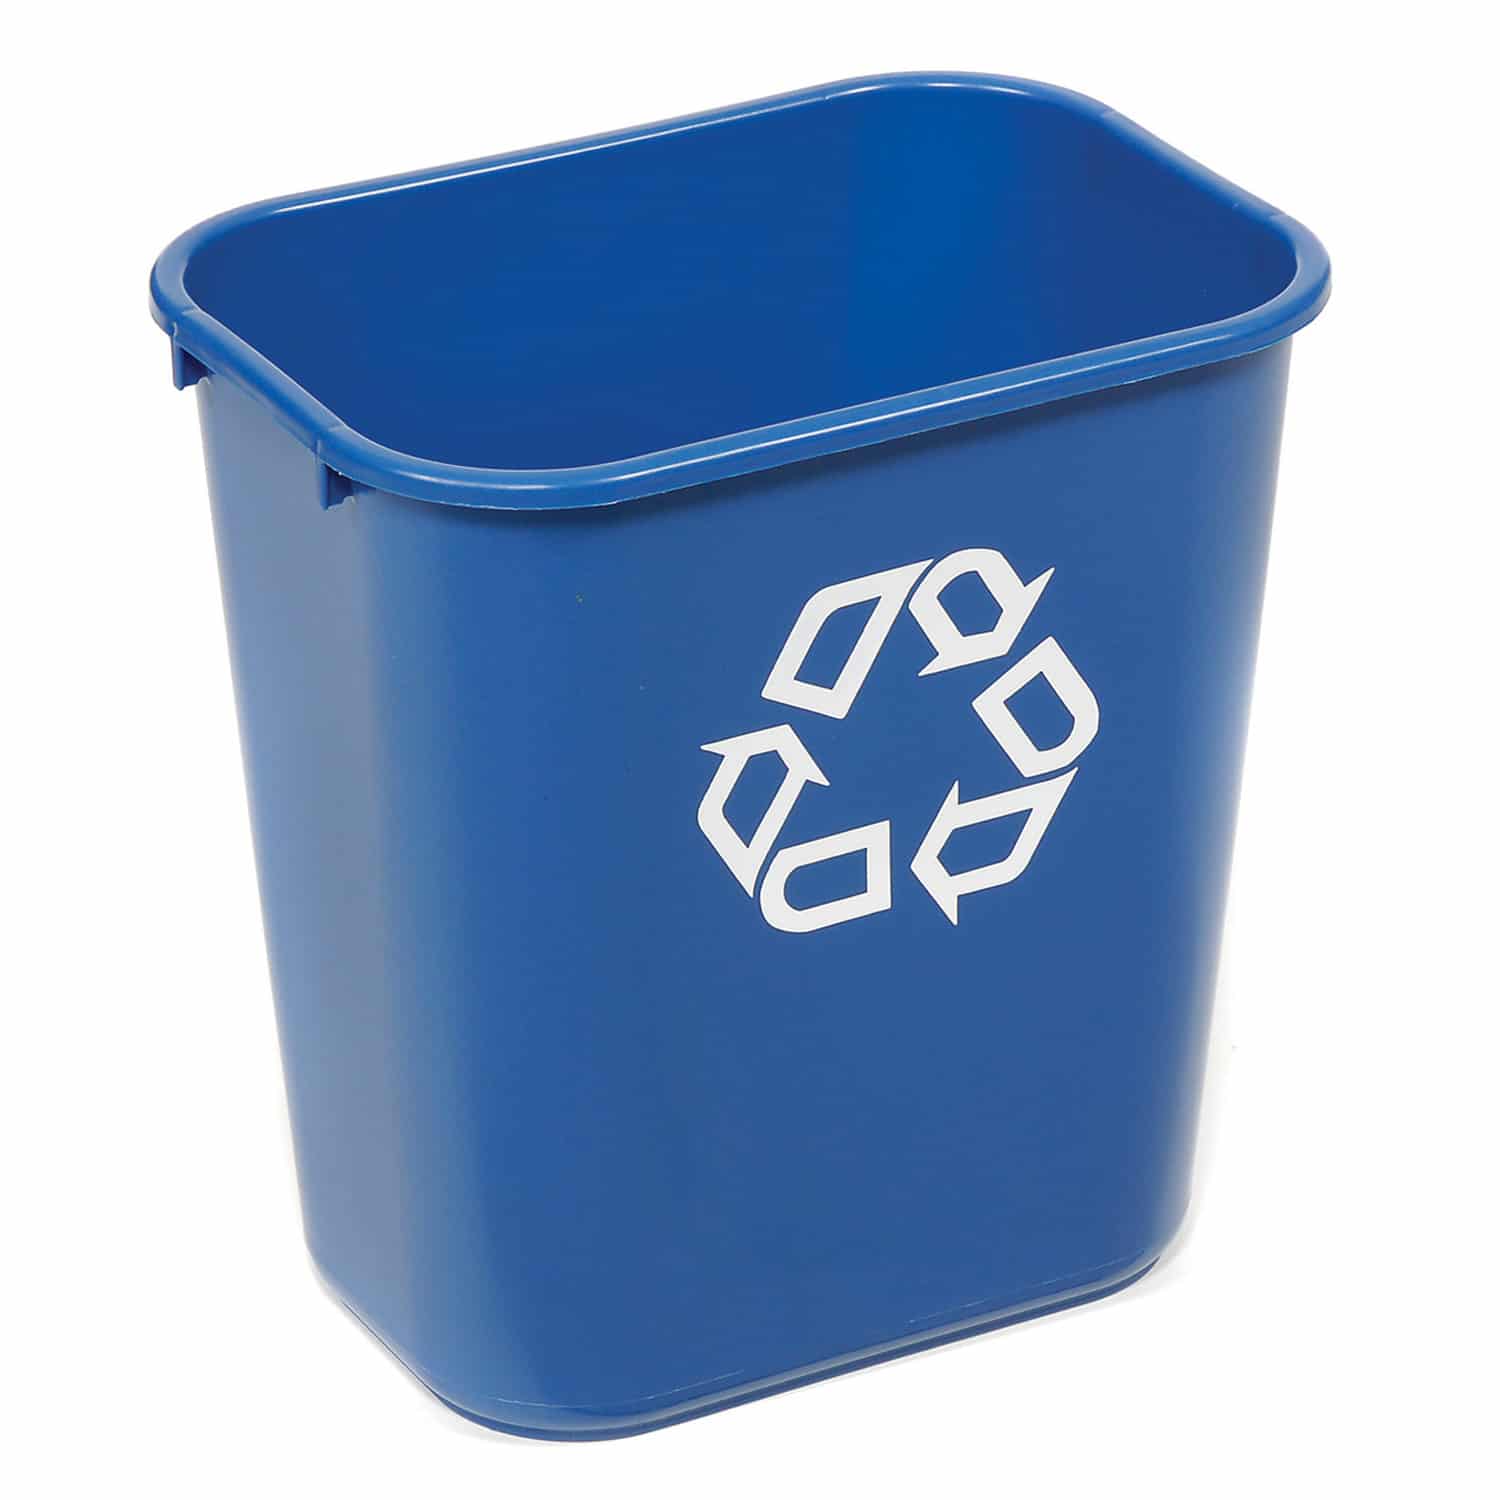 blue paper recycling bin